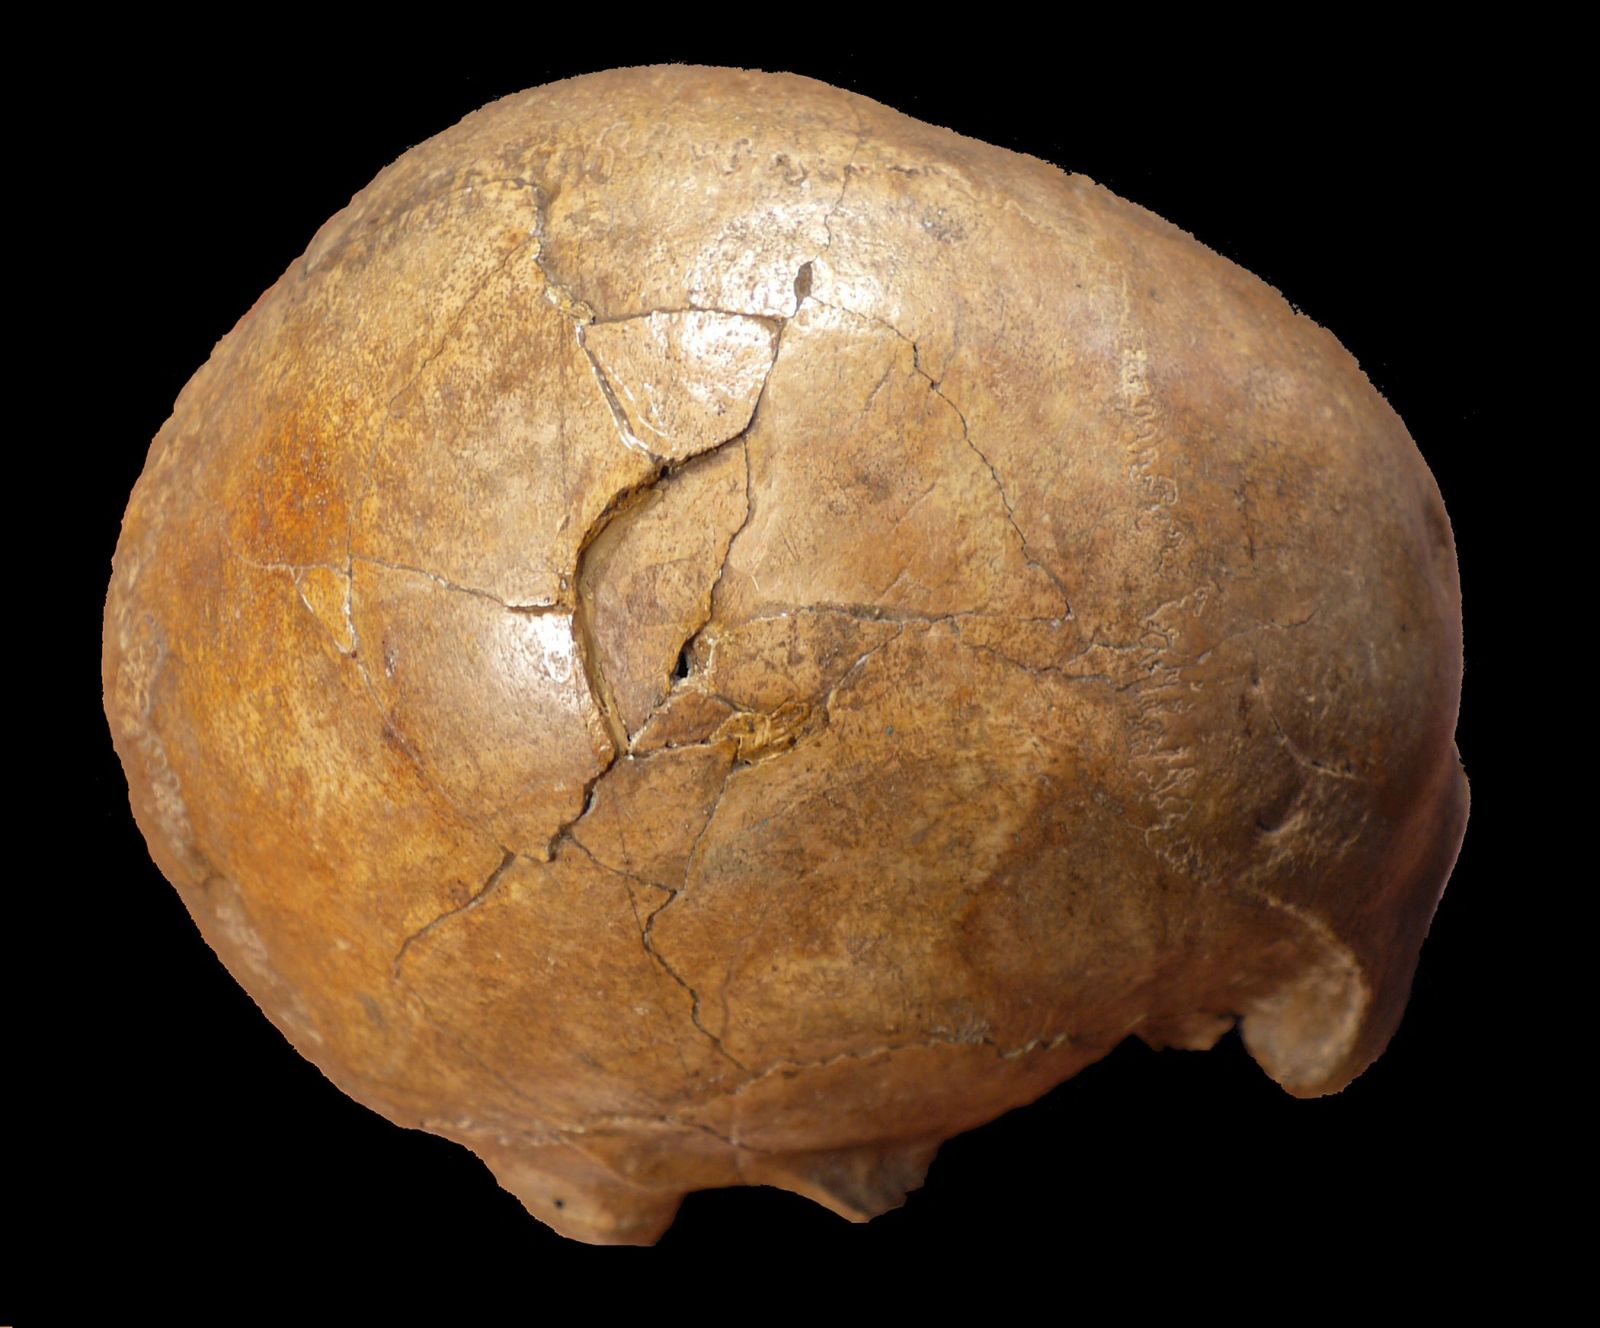 Ľudia sa vraždili už pred 33 000 rokmi. Lebka, ktorú našli v Rumunsku, má zranenia po útoku kameňom či palicou